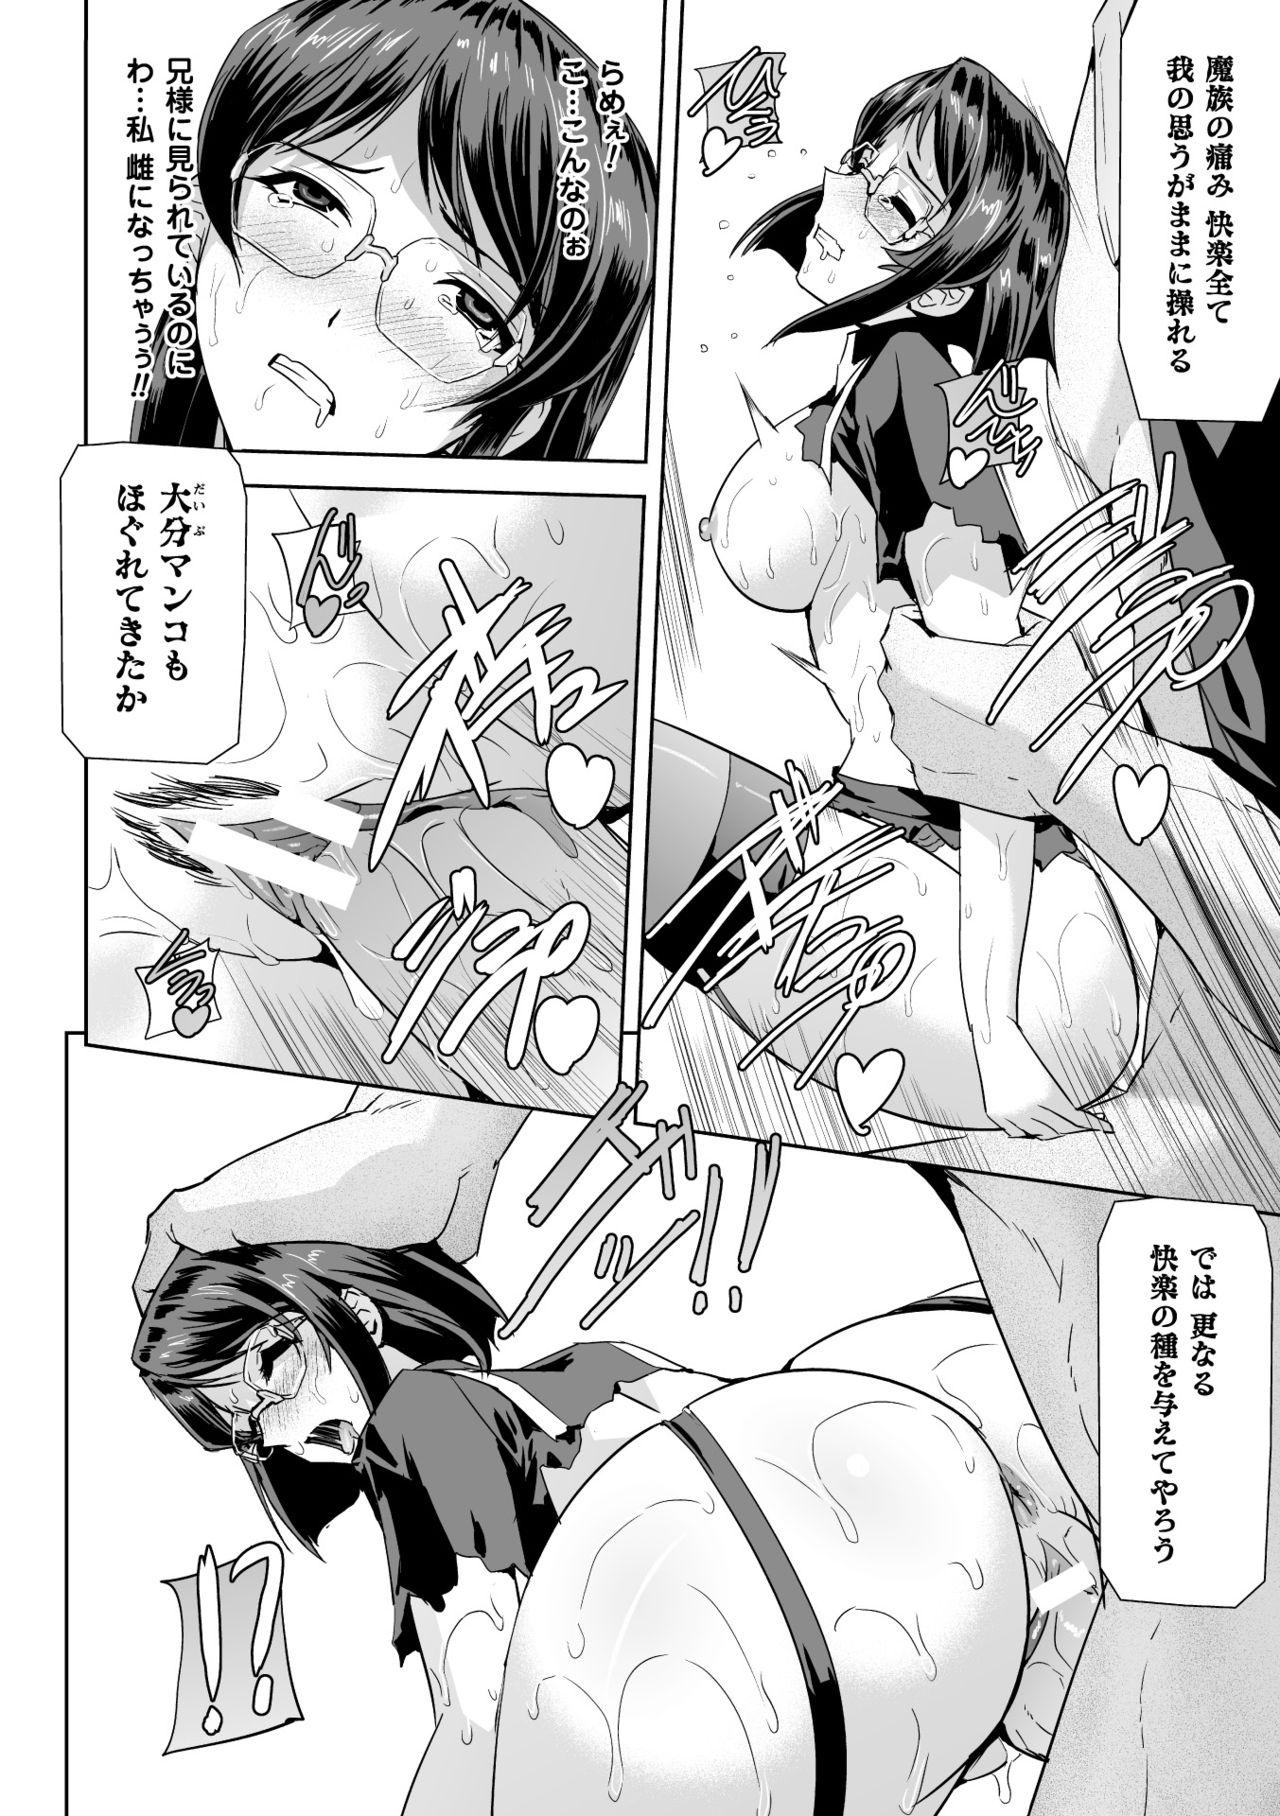 Seigi no Heroine Kangoku File Vol. 2 25